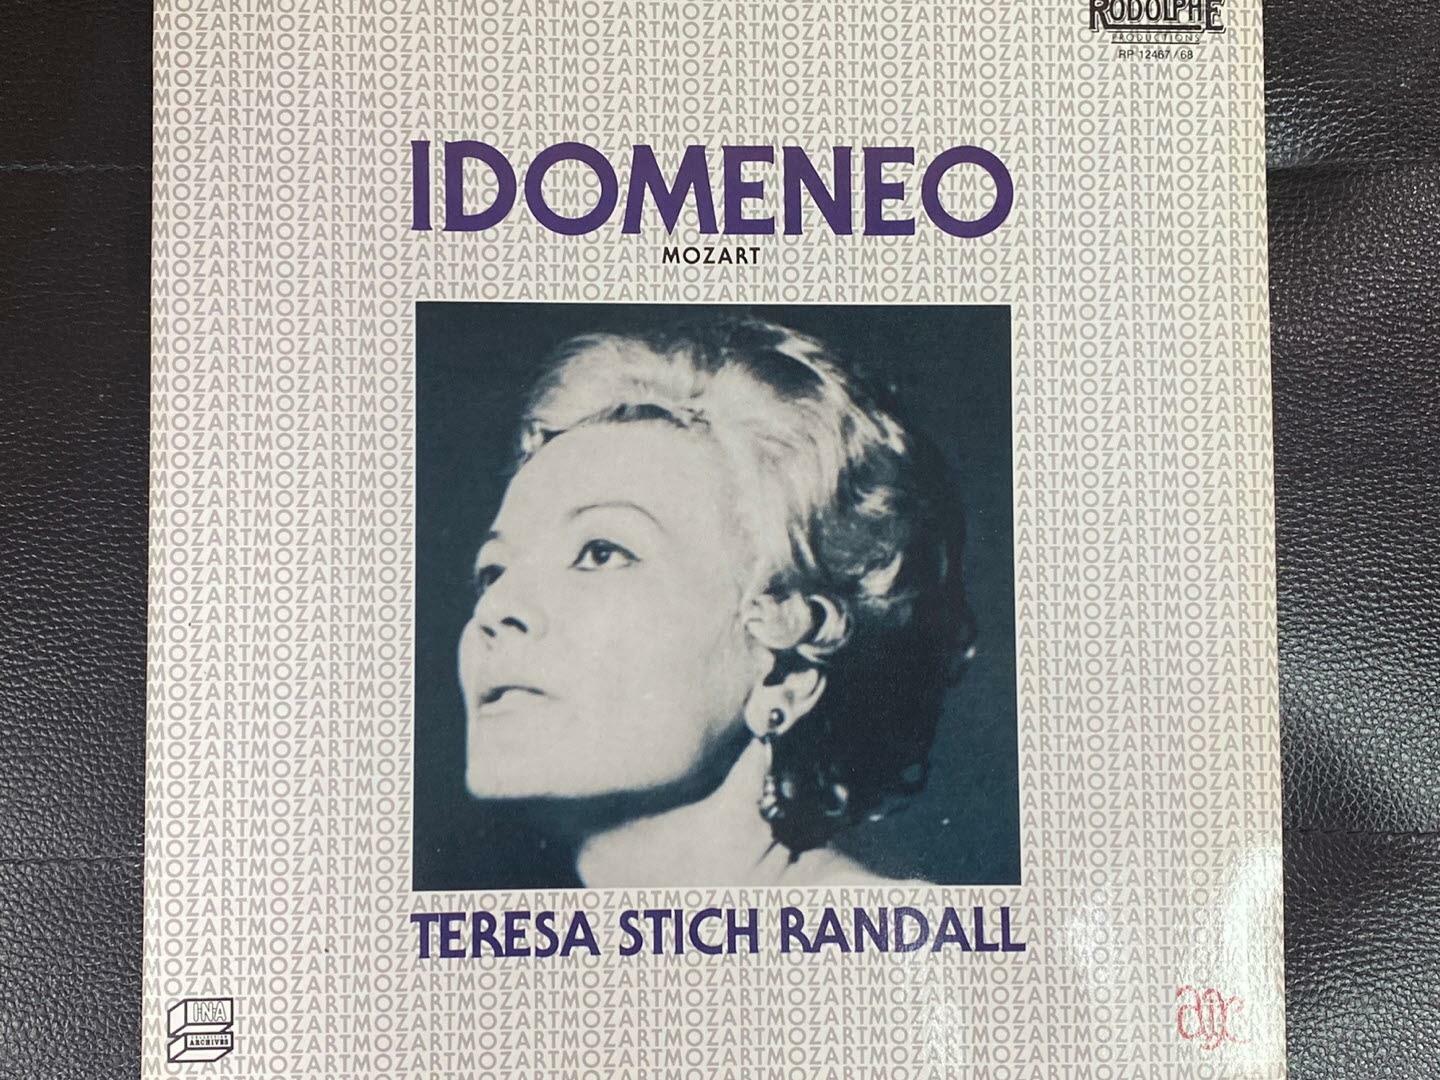 [중고] [LP] 테레사 스티치 랜달 - Teresa Stich-Randall - Mozart Idomeneo 2Lps [프랑스반] 